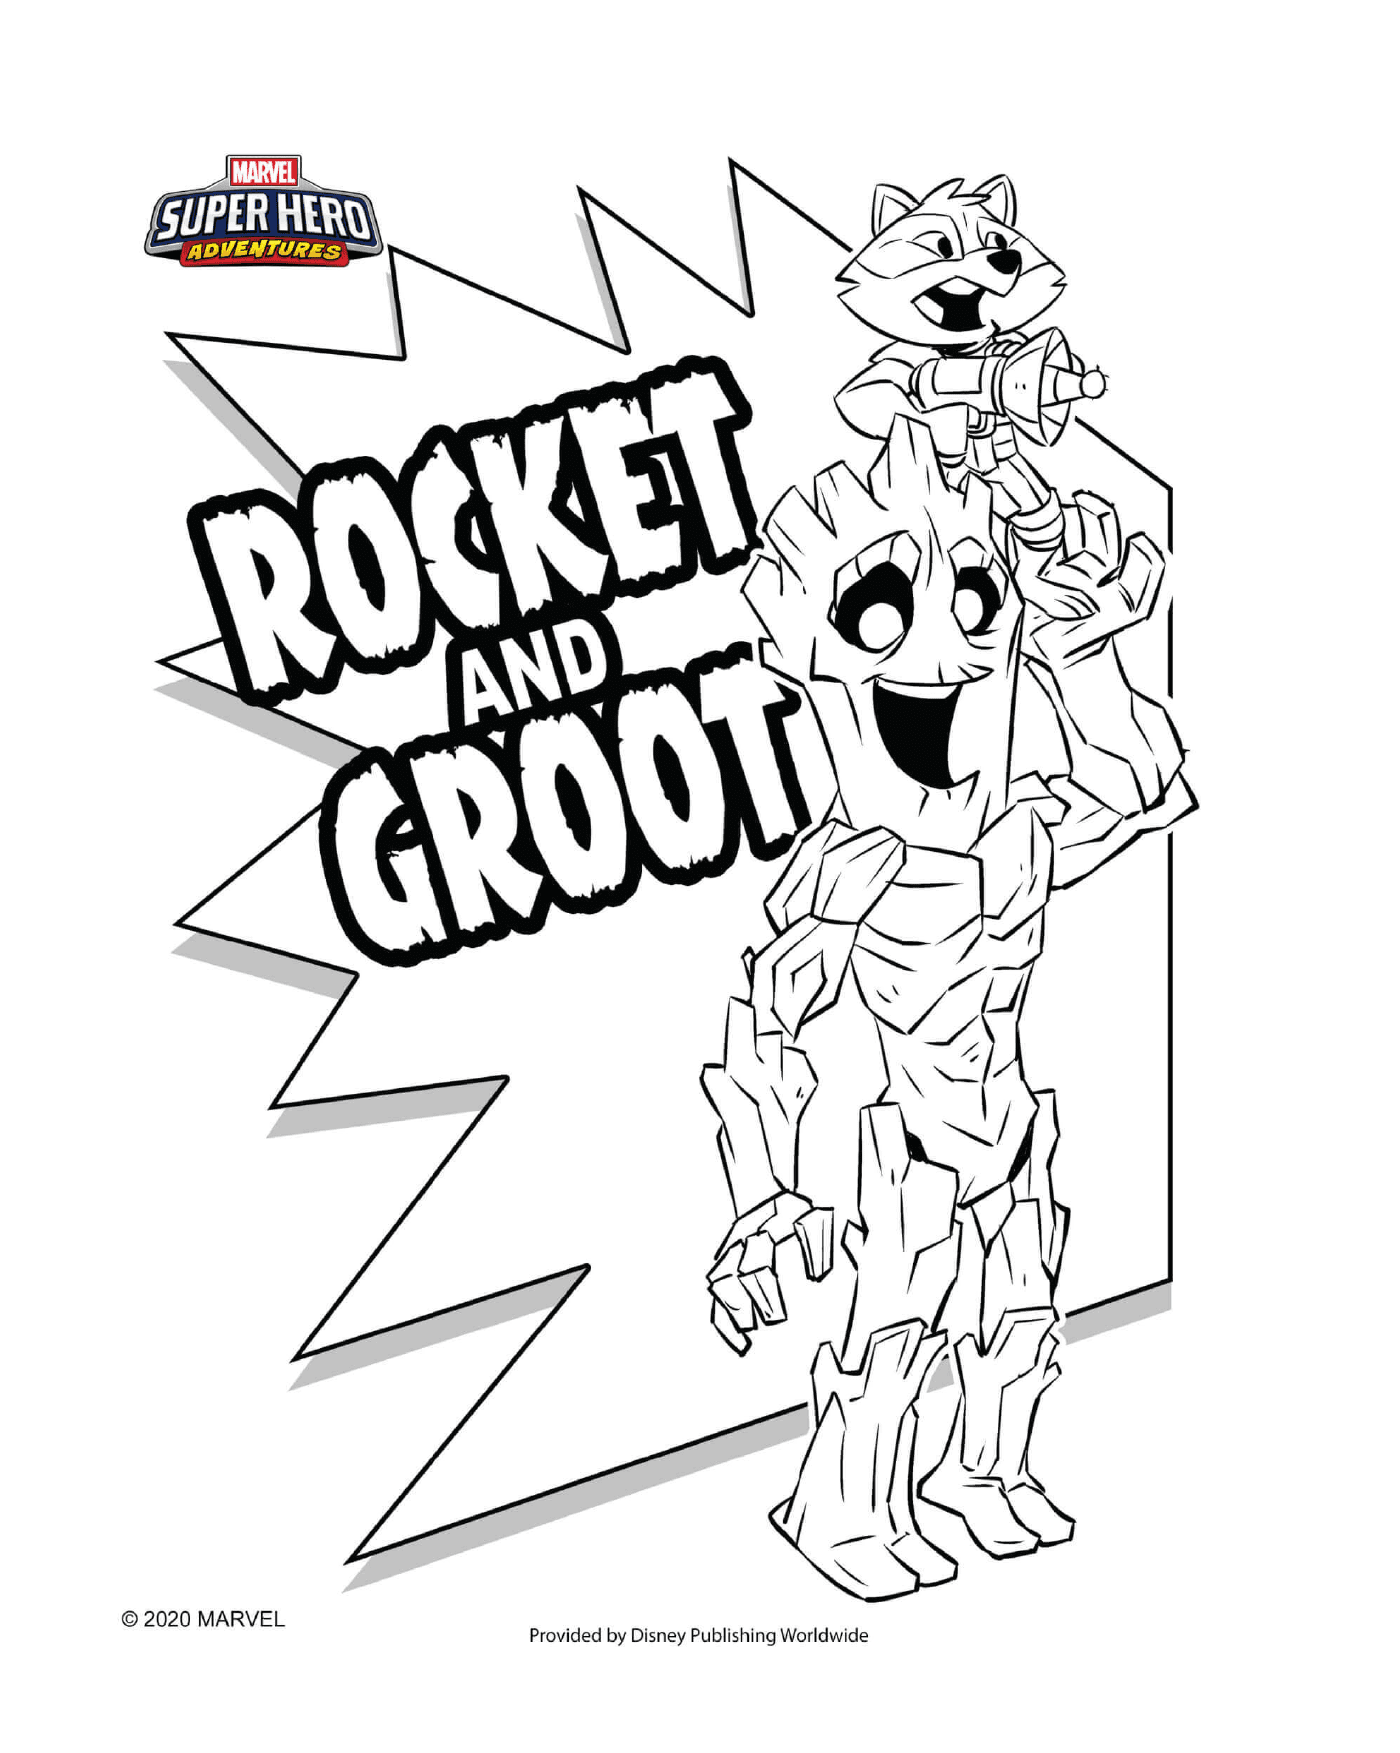  Rocket and Groot, superheroes 